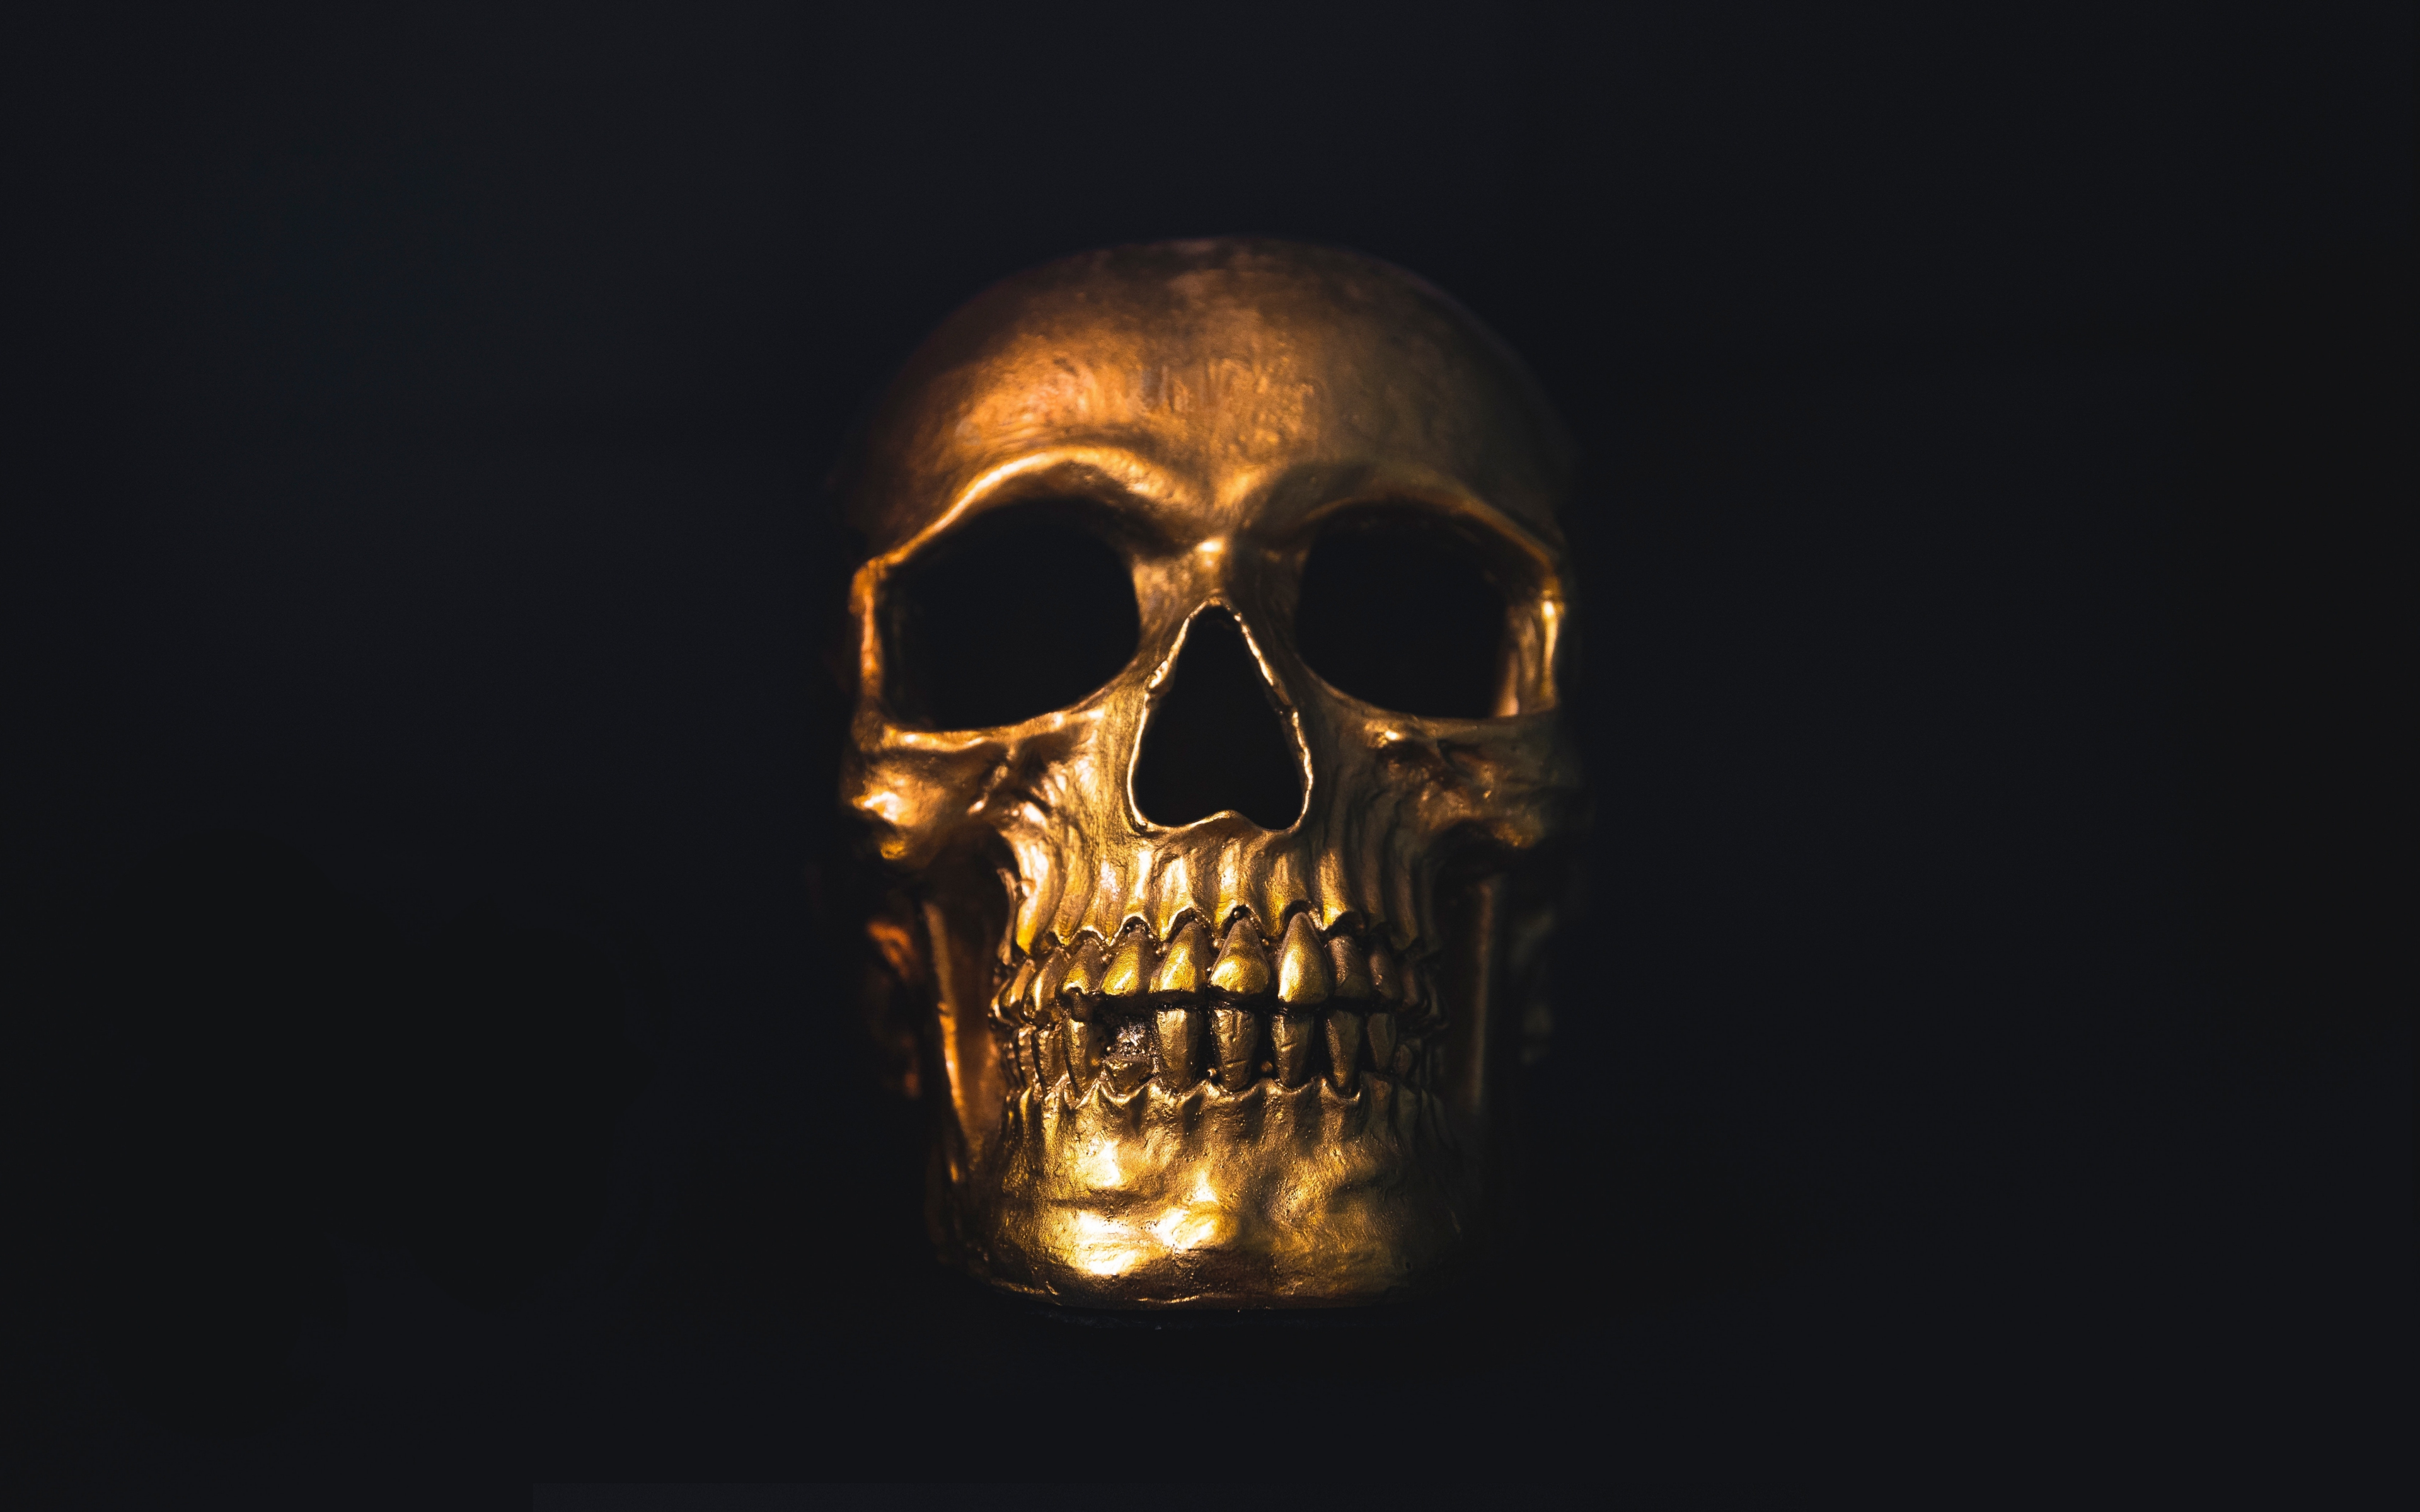 Download 3840x2400 wallpaper  golden skull minimal 4k  